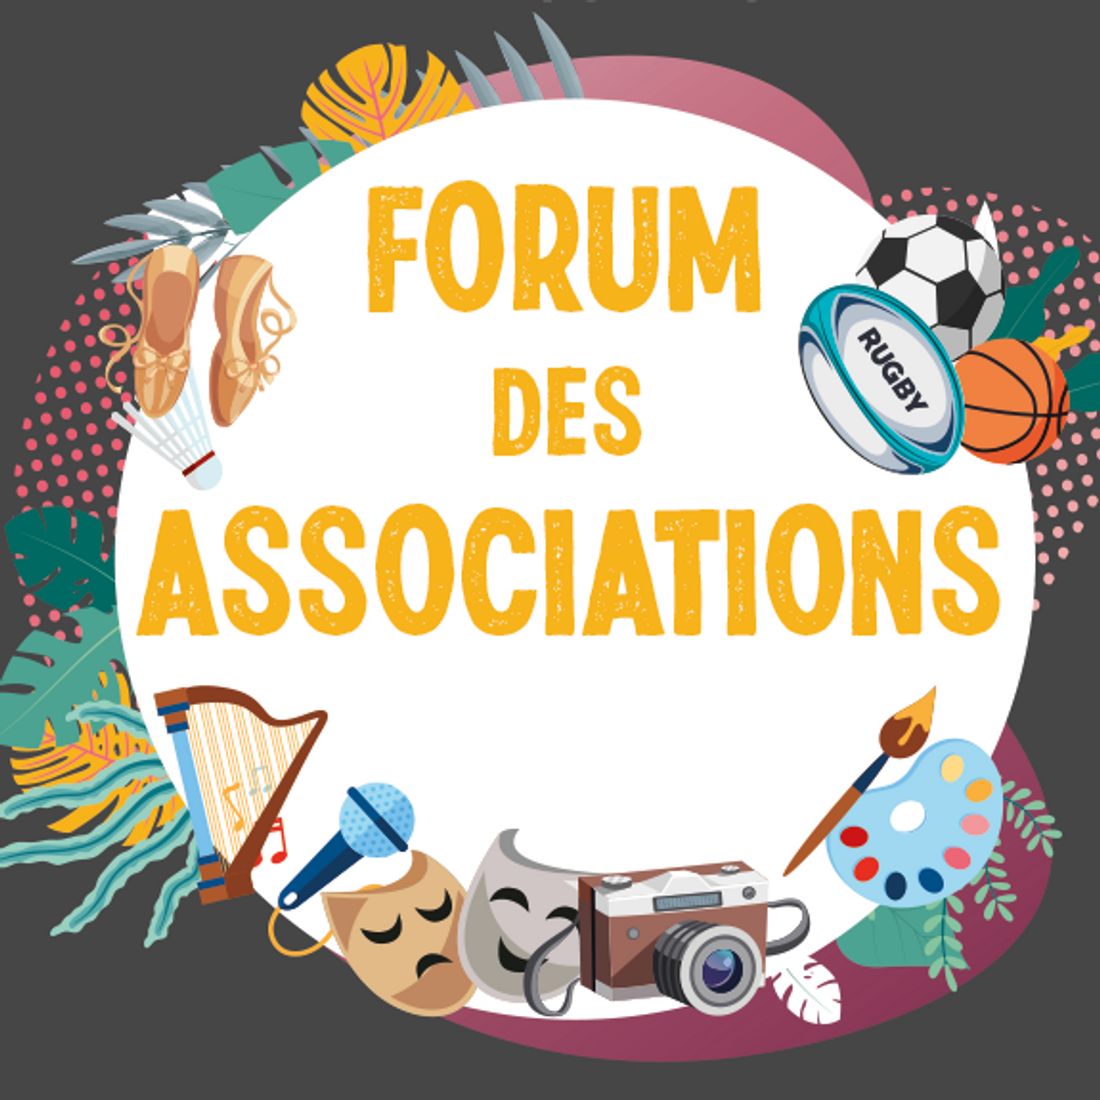 Forum des associations : le programme de Perpignan